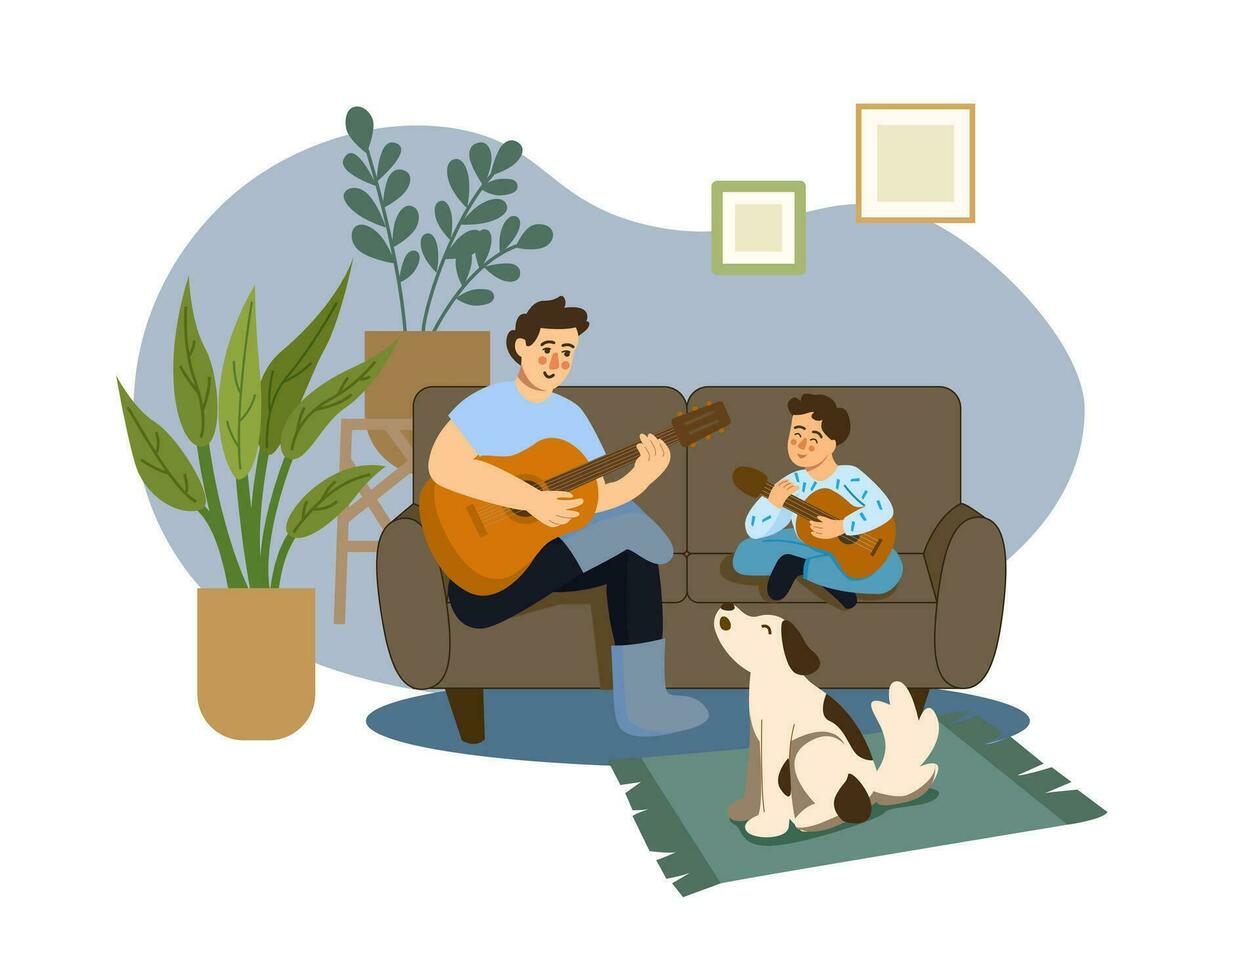 padre y hijo sentar en el sofá a hogar y jugar guitarras un perro se sienta siguiente a ellos y canta a lo largo de. concepto de paternidad, paternidad vector